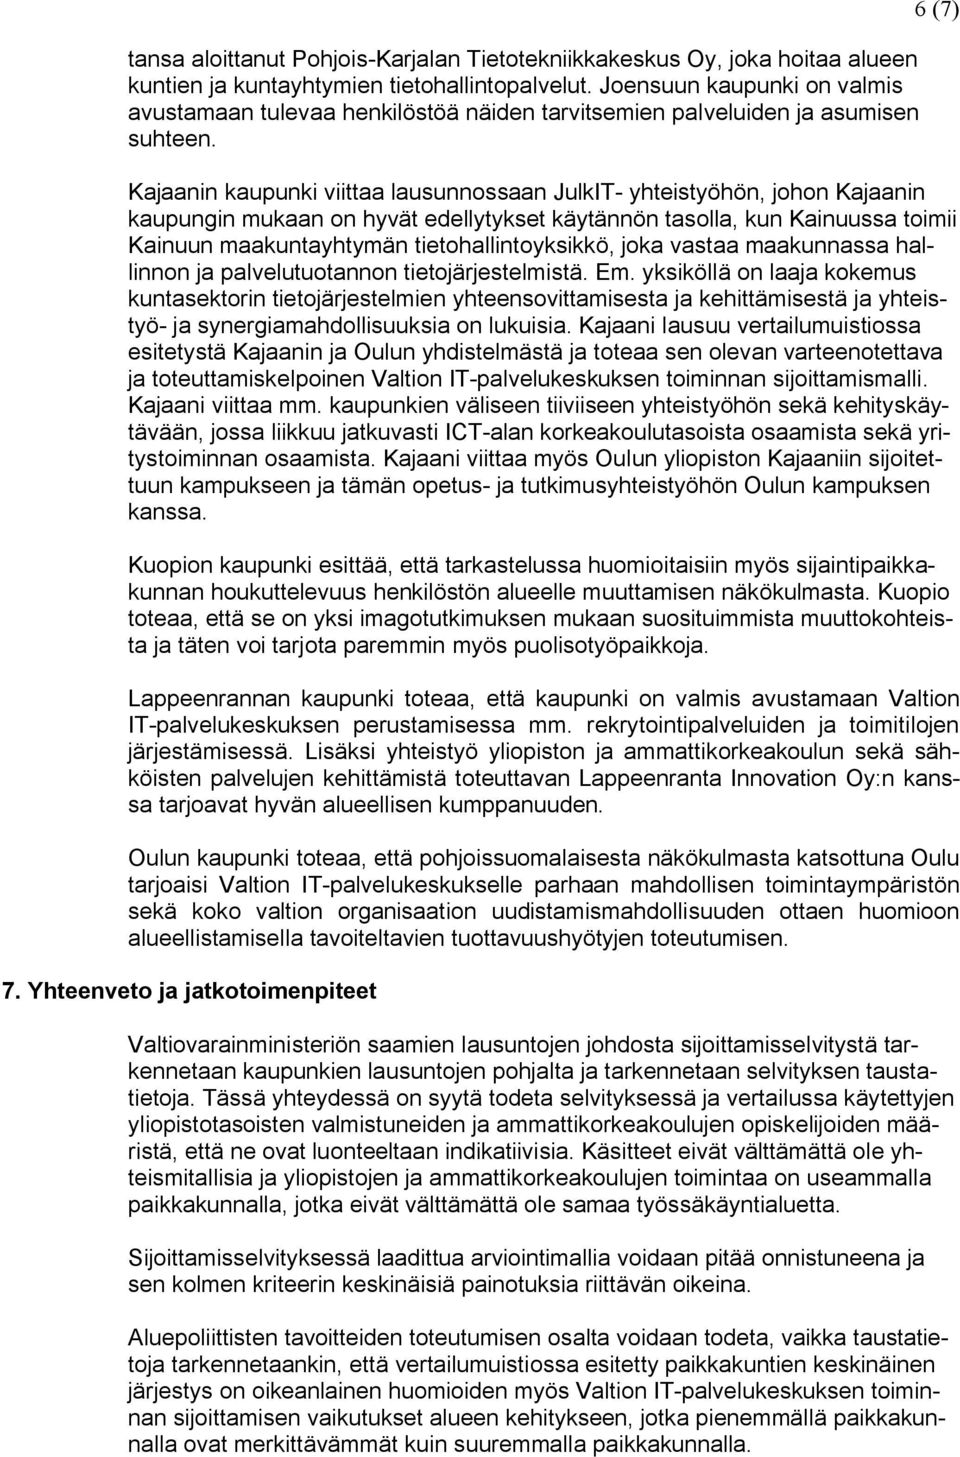 6 (7) Kajaanin kaupunki viittaa lausunnossaan JulkIT- yhteistyöhön, johon Kajaanin kaupungin mukaan on hyvät edellytykset käytännön tasolla, kun Kainuussa toimii Kainuun maakuntayhtymän